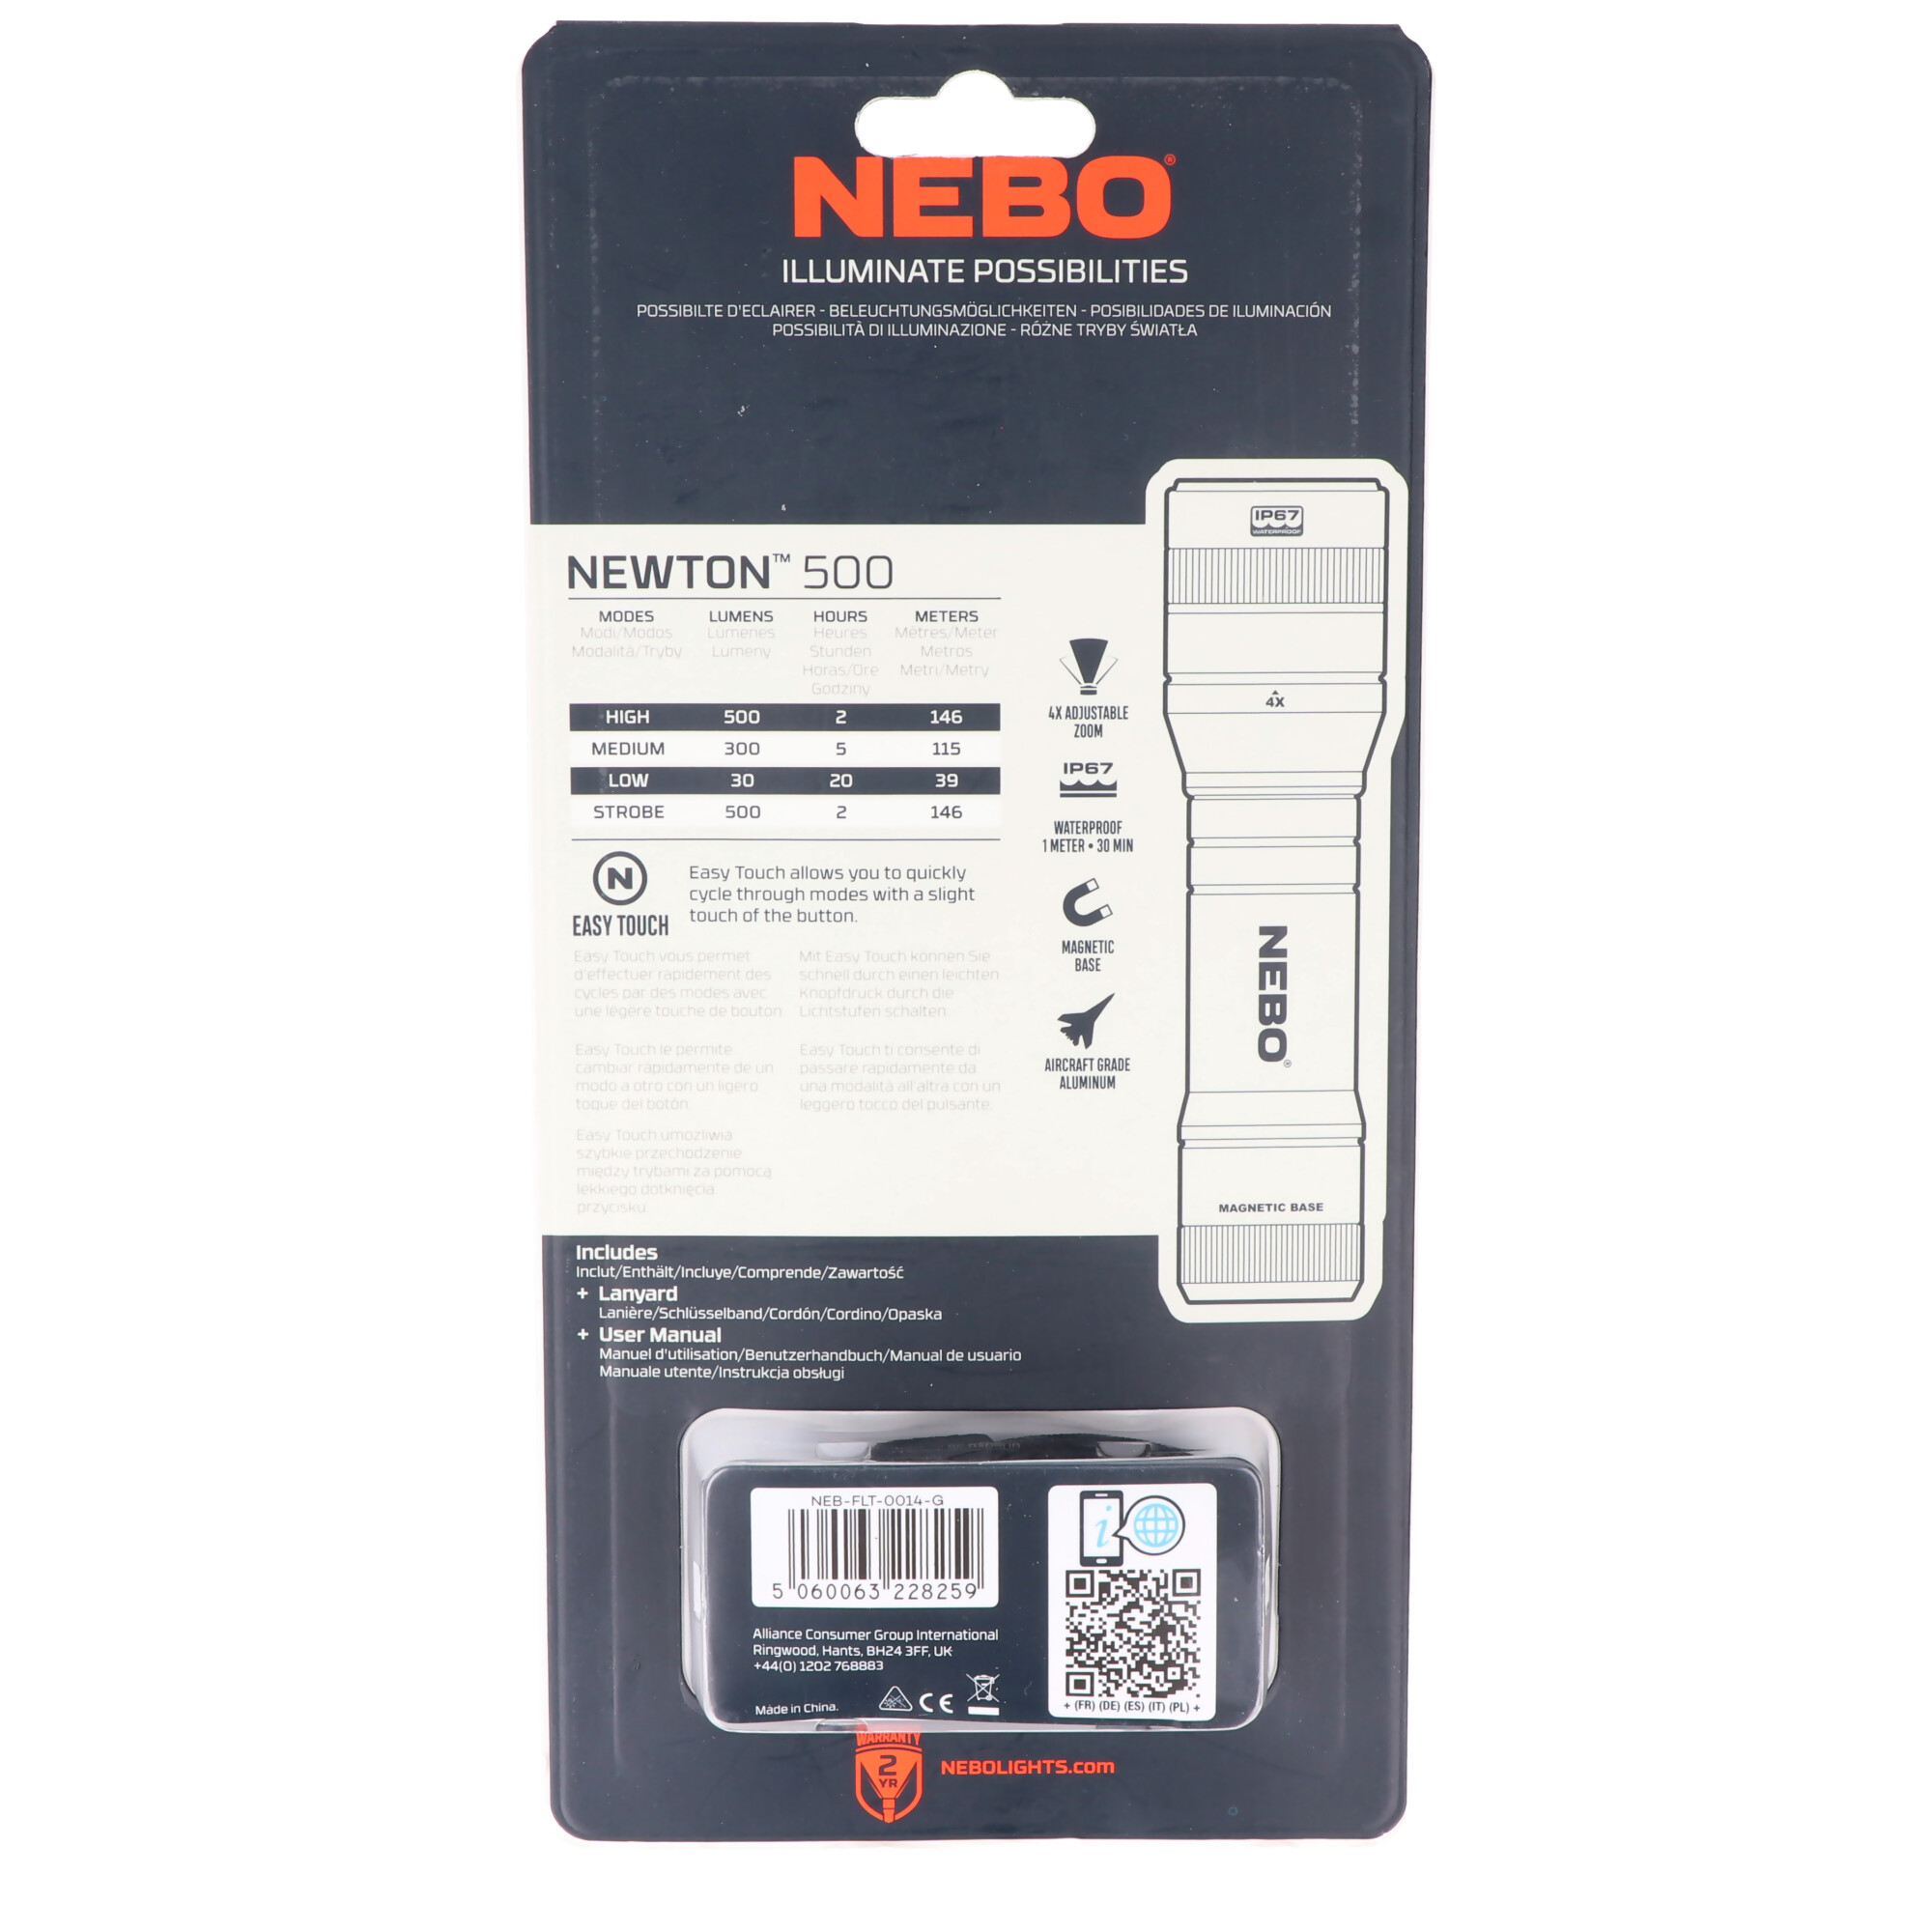 NEBO LED Taschenlampe NEWTON 500 mit bis zu 500lm und 146m Leuchtweite